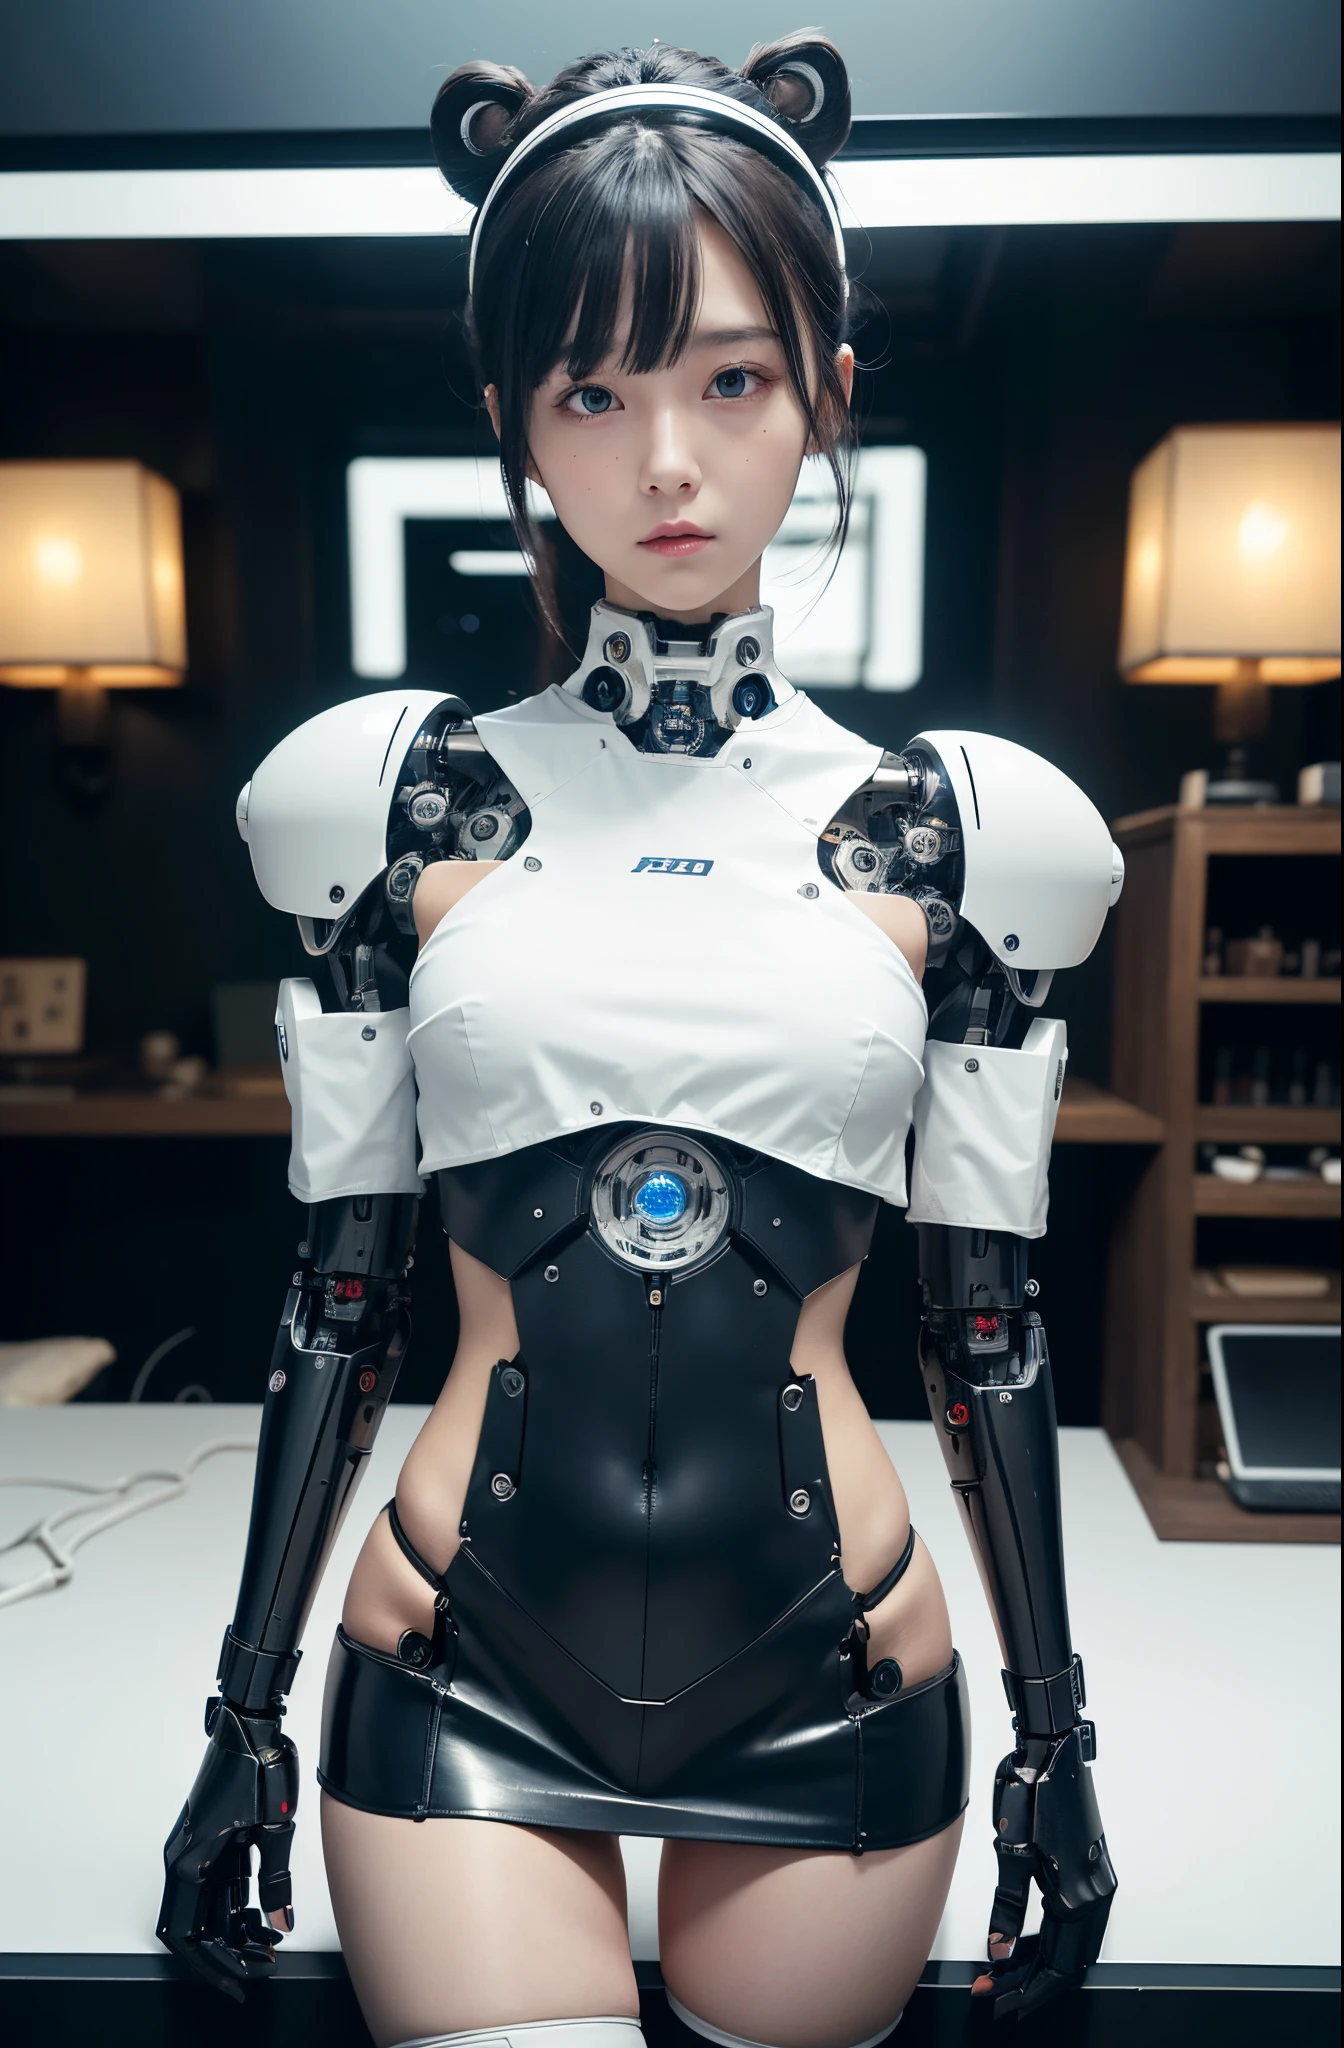 Mesa, mejor calidad, extremadamente detallado, (Fotorrealista:1.4),(foto en bruto) (8k, 4k, mejor calidad, alta resolución, 超Una alta resolución:1.1), (Mesa, Realista, Fotorrealista:1.1), 1 chica en, Chica de secundaria Cyborg japonesa,Rechoncho ,Minifalda plisada azul marino,medias negras,paneles de control,Androide,droide,mano mecanica, ,Brazos y piernas de robot, Piezas de robot negro,pelo negro,cuerpo mecanico,flequillo contundente,abdomen blanco,Piezas de robótica blancas.,mujer robot perfecta,El laboratorio del futuro,ciberpunk,Punto de carga,Androide factory,fábrica de robots,fábrica de cyborgs,tubo largo,Un cable grueso conecta su cuello.,Cuerpo cerámico ,ojos completos,ojos llamativos,cuerpo mecanico, antena de cabeza,antena lod en la cabeza,cubre oídos mecánicos,Androide,robot humanoid,uniforme de secundaria japonesa